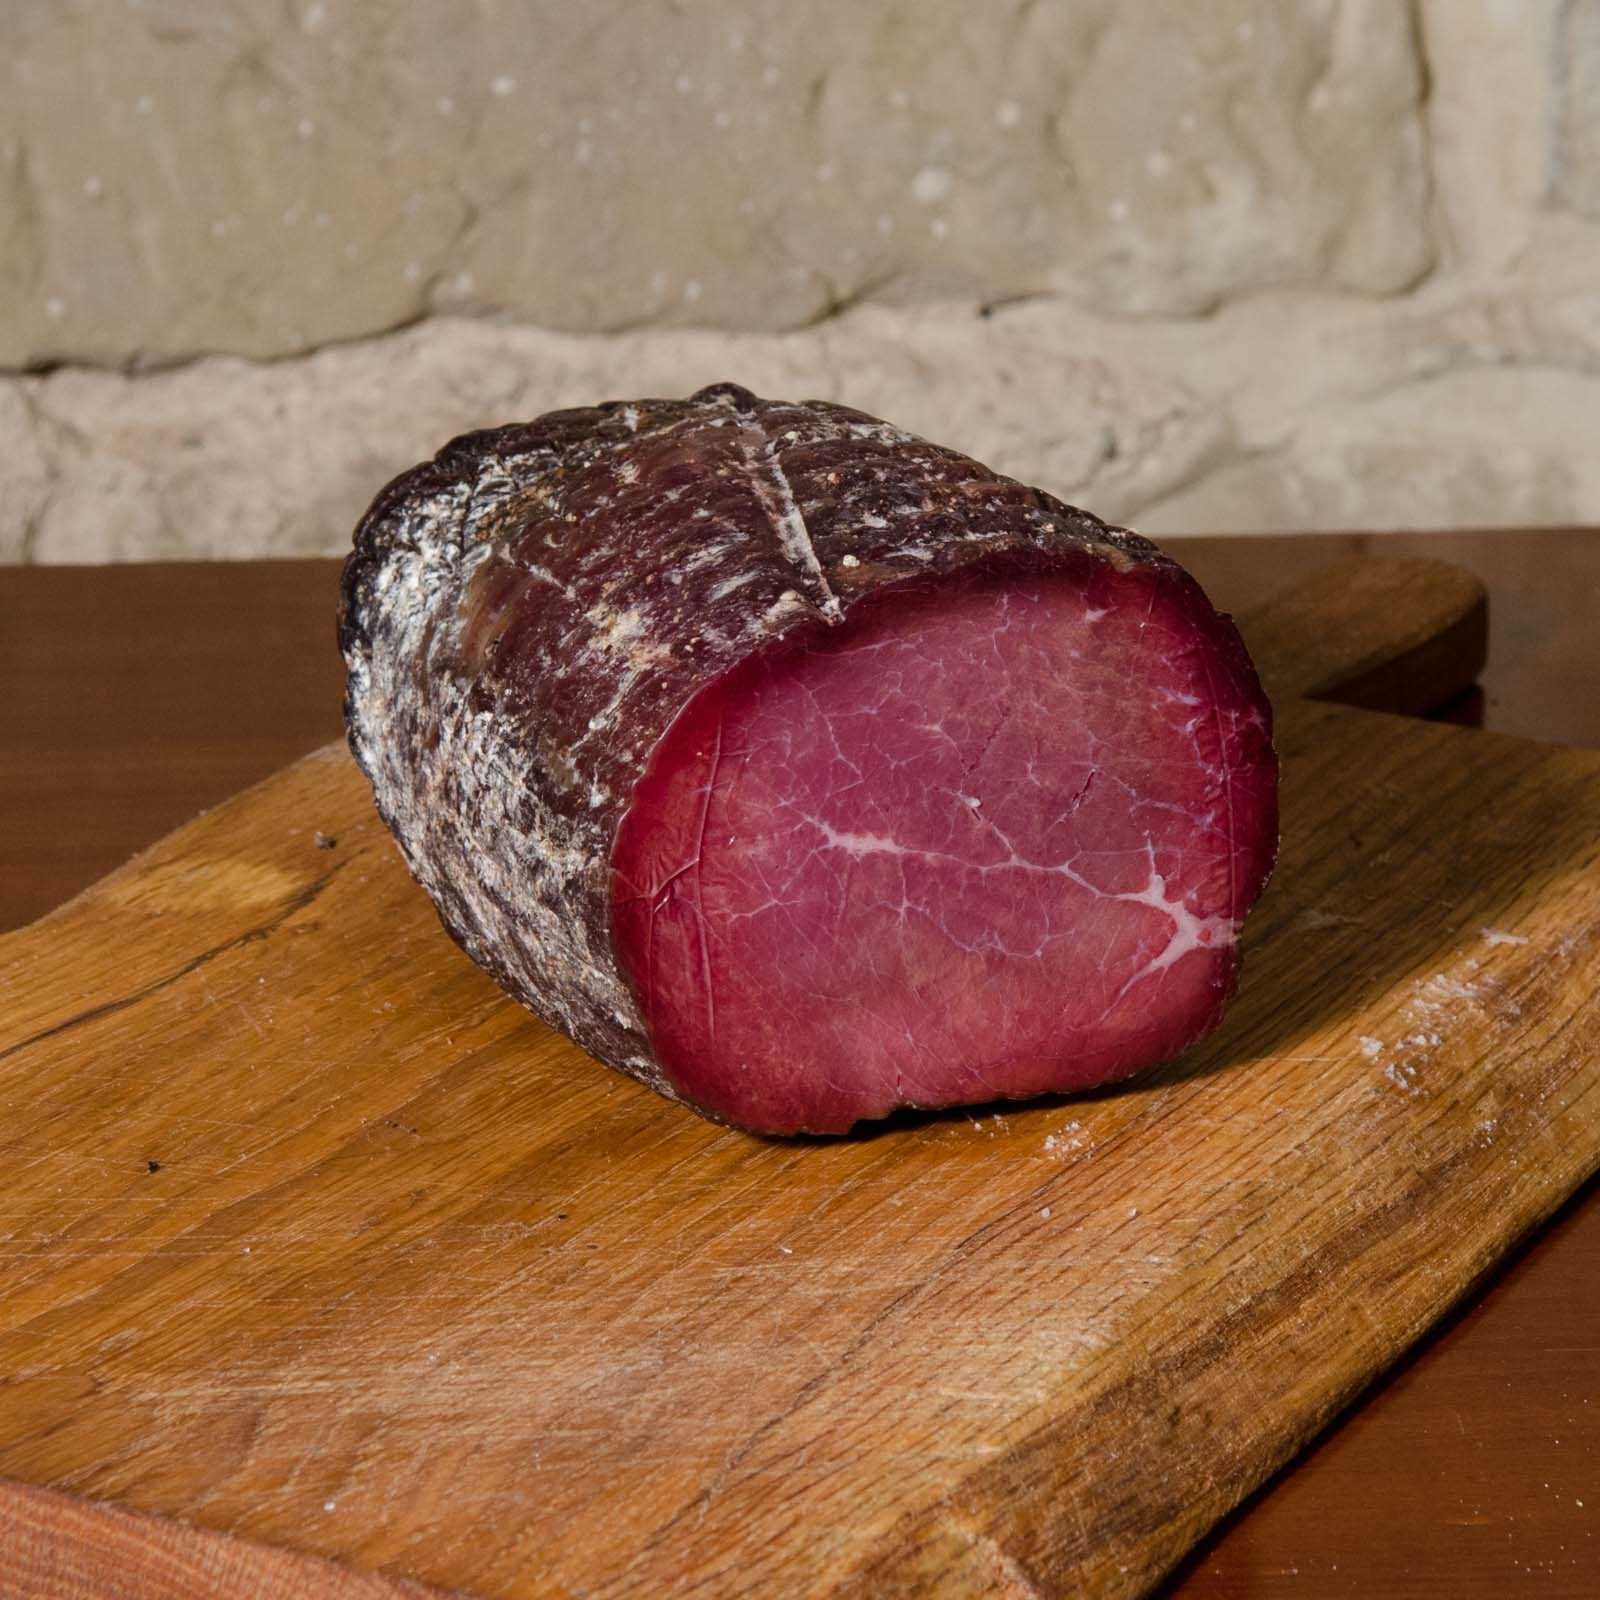 Bresaola (luftgetrockenes und gesalzenes Rindfleisch) aus Chianina-Fleisch.